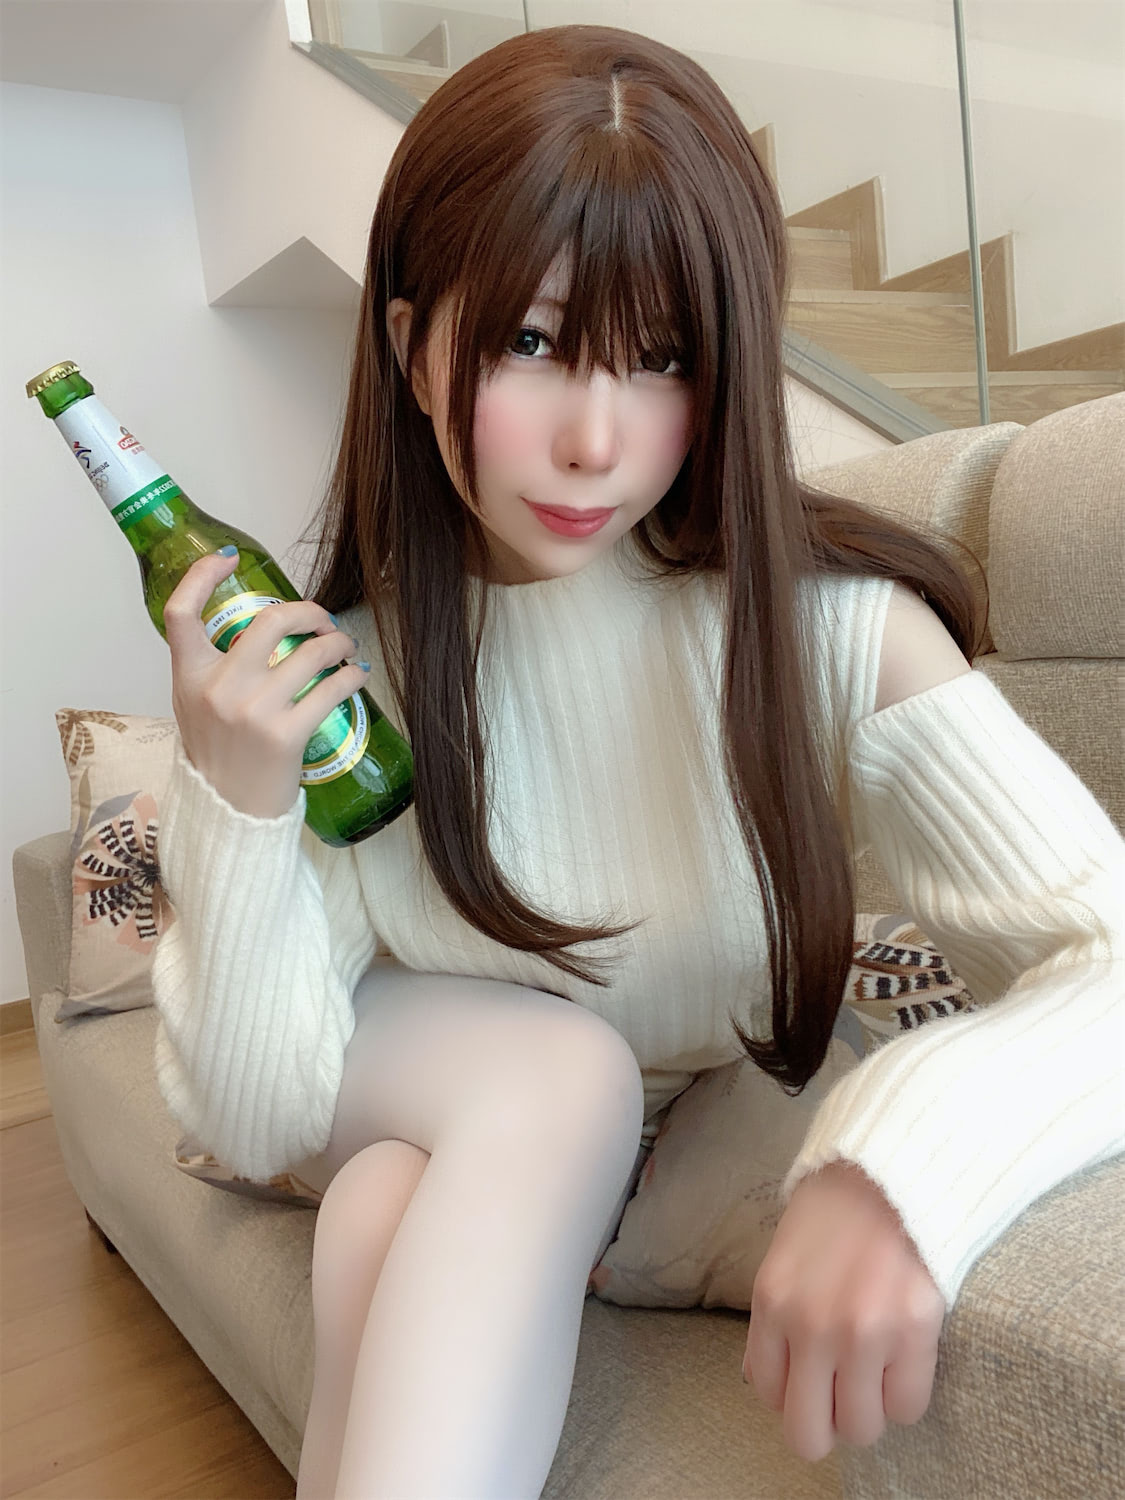 鹿野希爱喝啤酒毛衣女友4